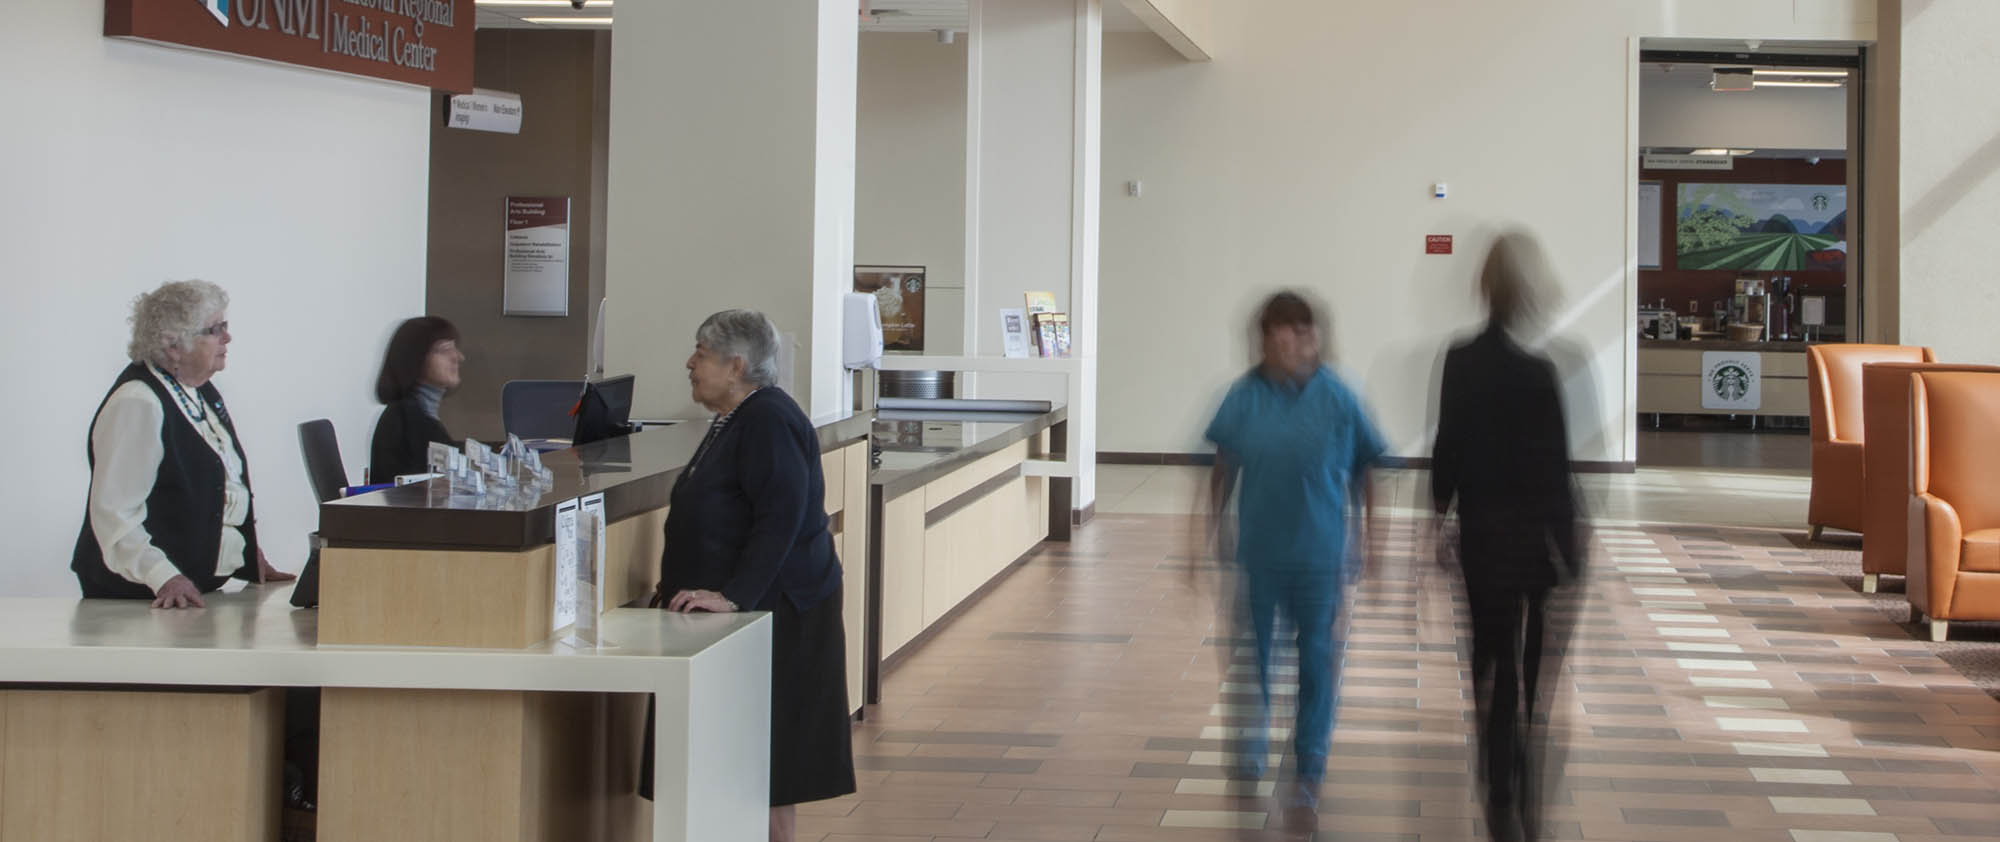 Zeitraffer-Lobby des Sandoval Regional Medical Center